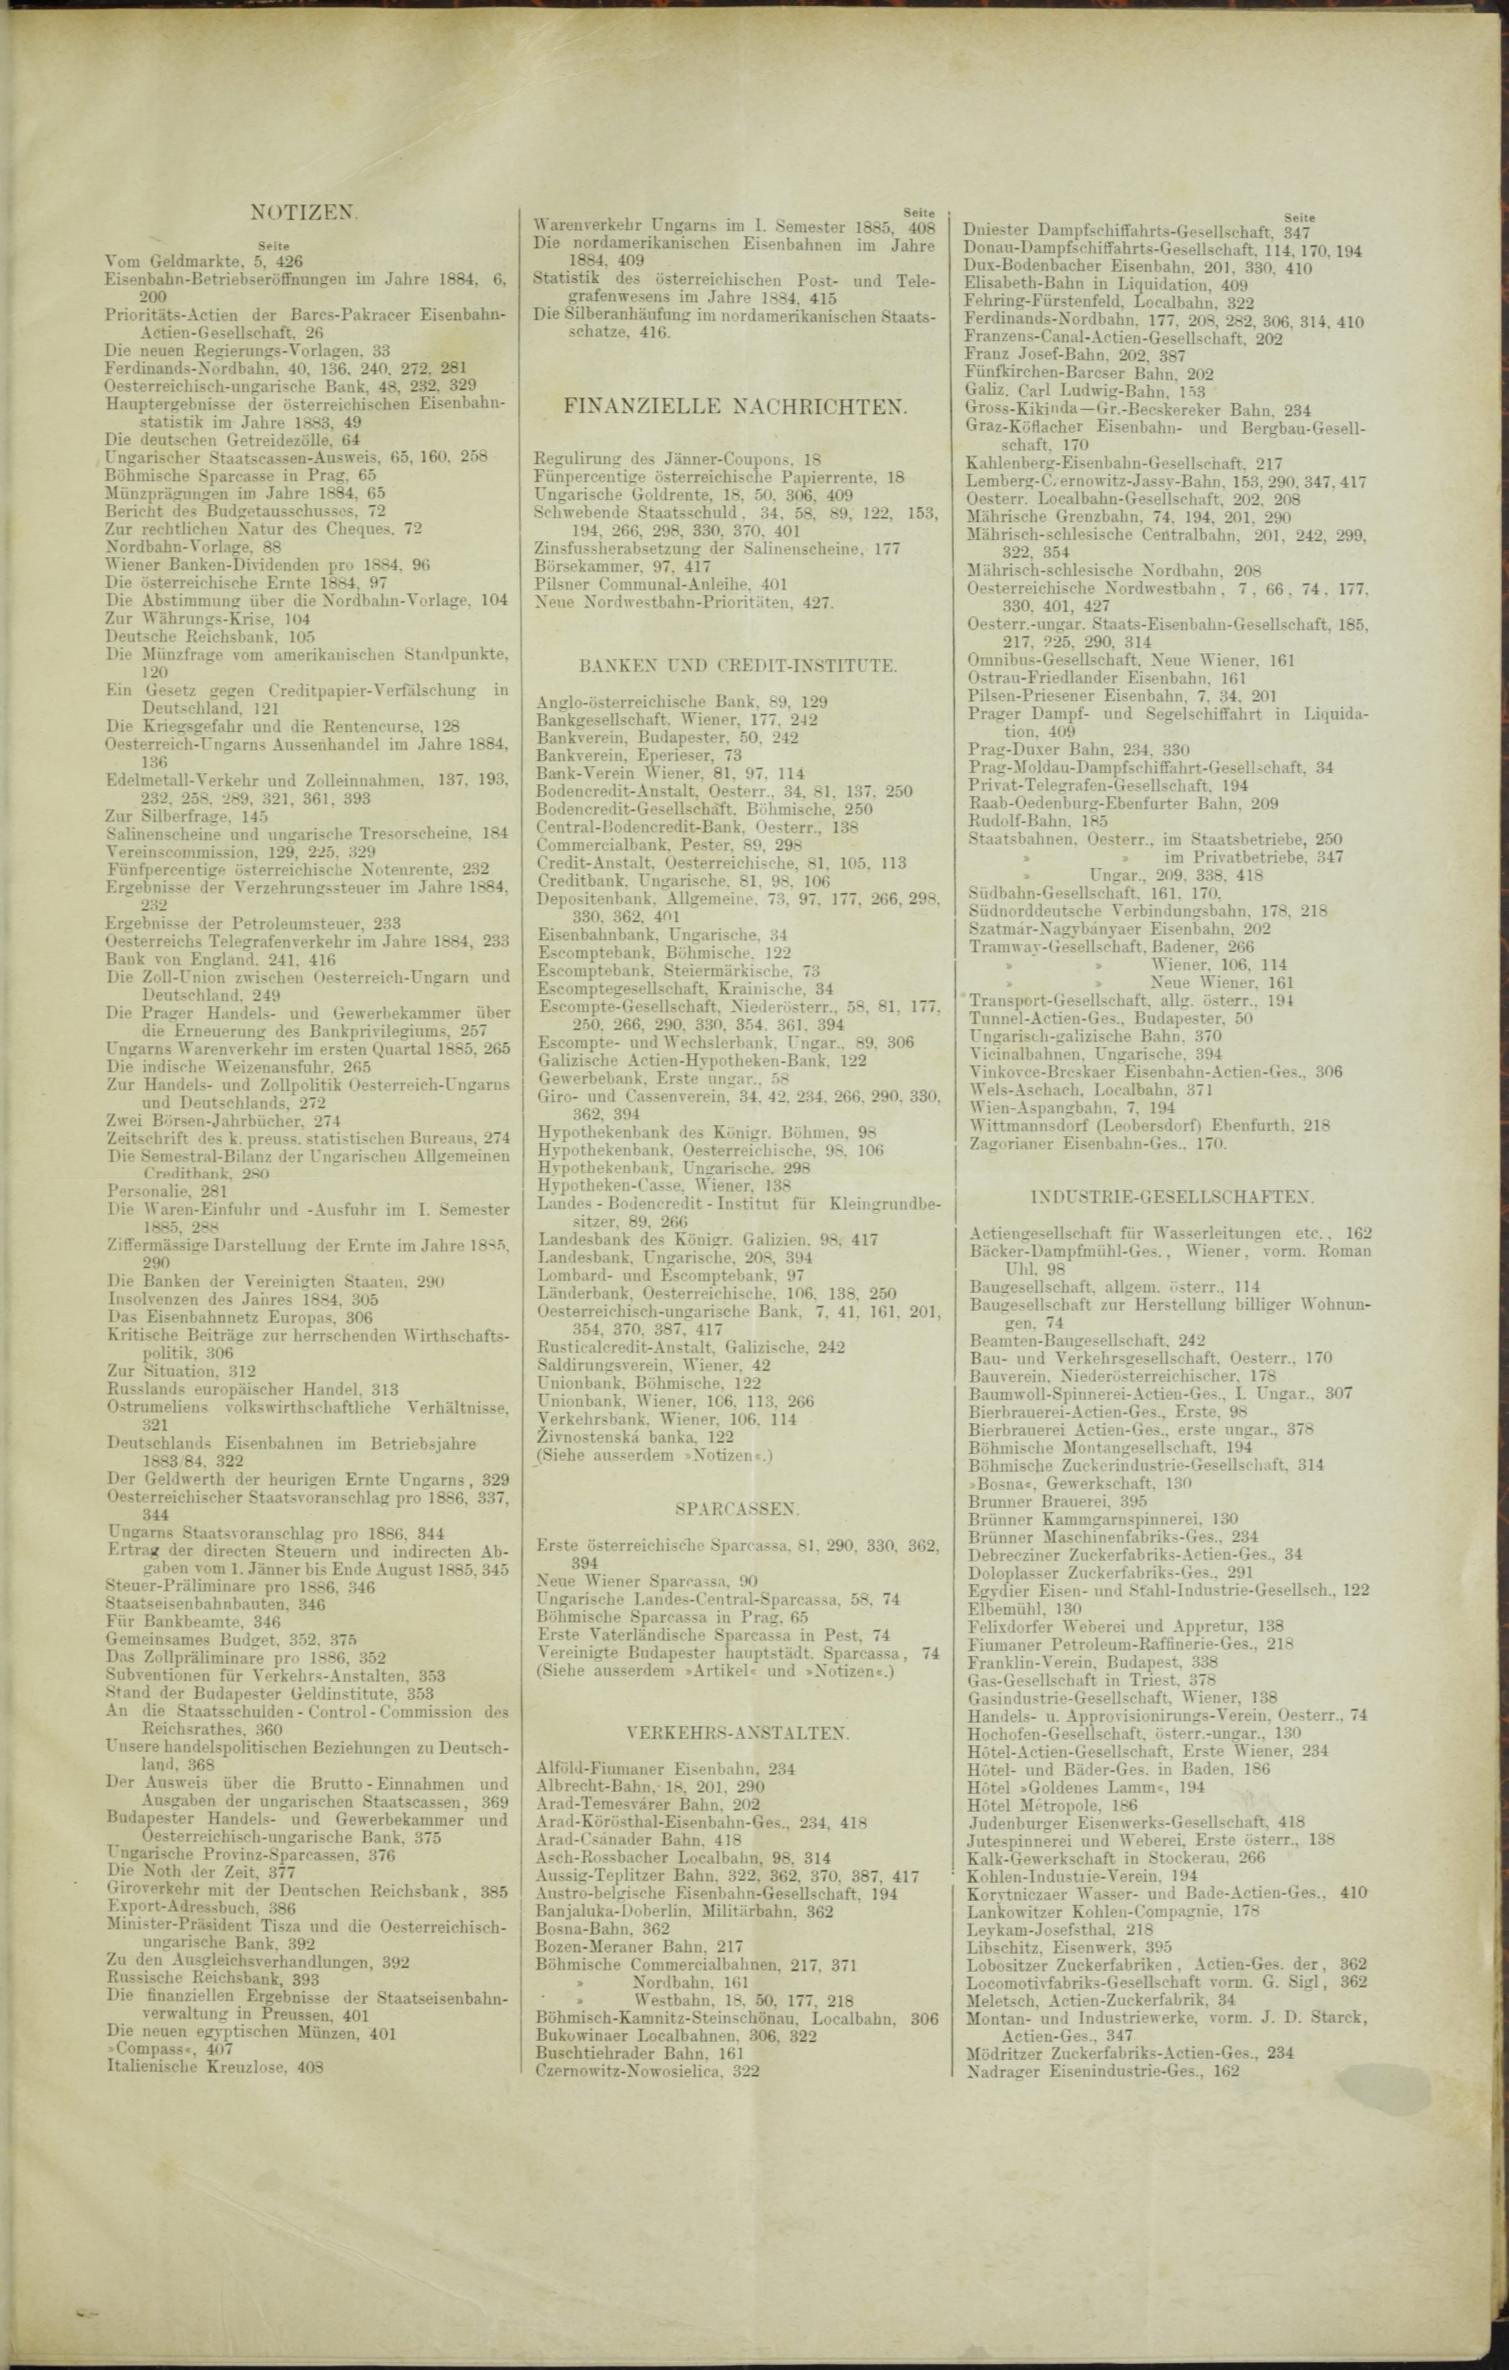 Der Tresor 29.10.1885 - Seite 11